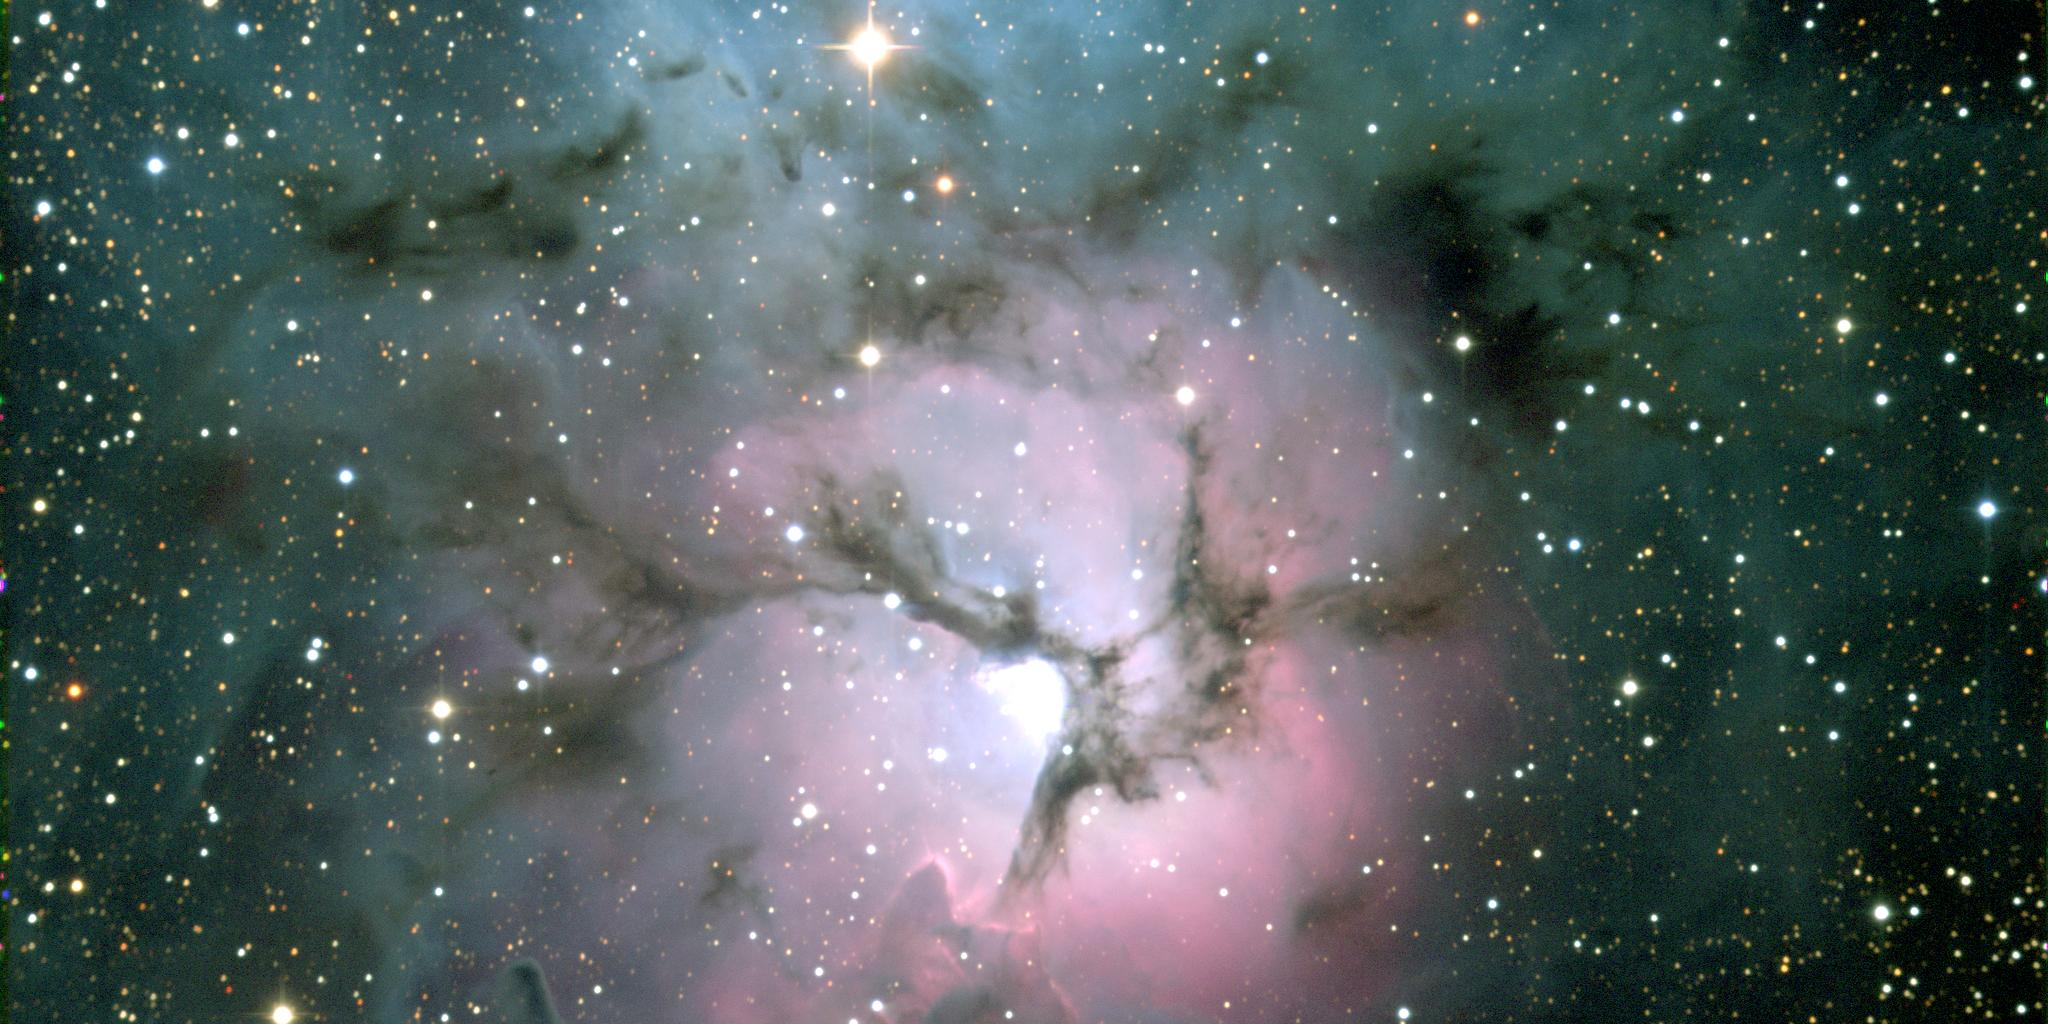 GALAKTICKA TEZKA Mlhovina Triﬁd 1 c T. Boroson, NOAO/AURA/NF. Triﬁd, m dalekohledem KPNO. Triﬁd je jedním z nejkrásnějších nebeských objektů vůbec.